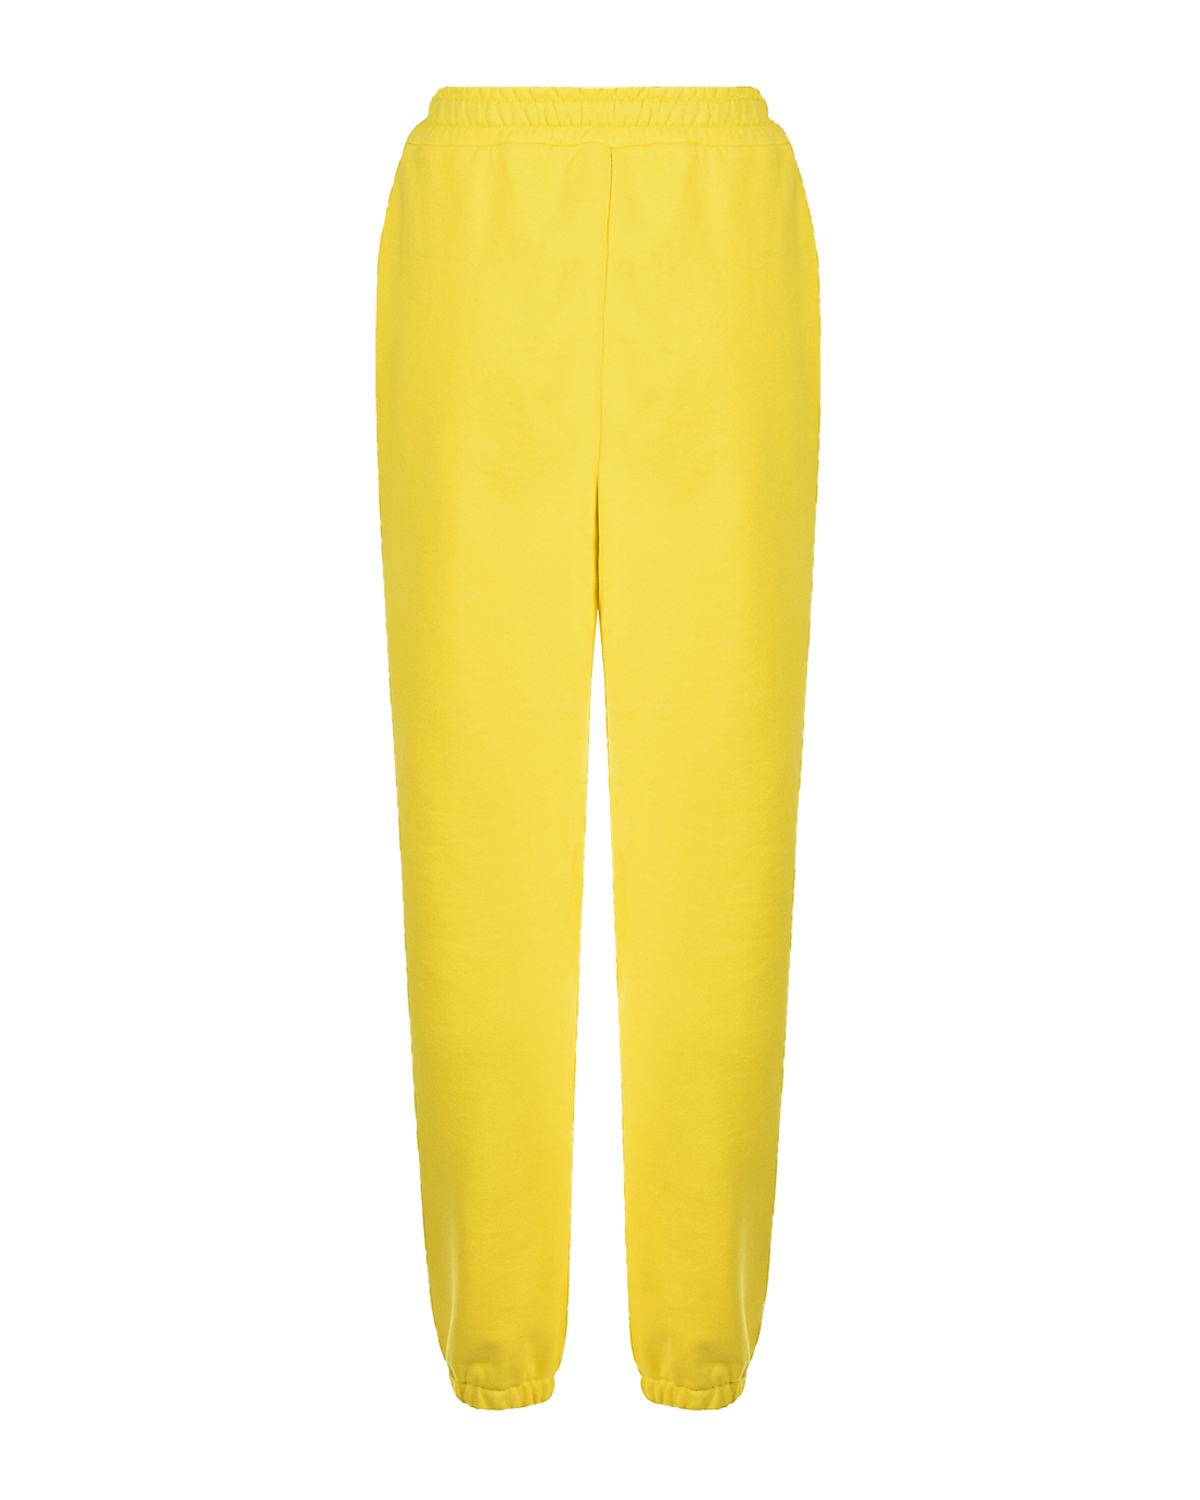 Желтые трикотажные брюки Dan Maralex, размер 42, цвет желтый - фото 5